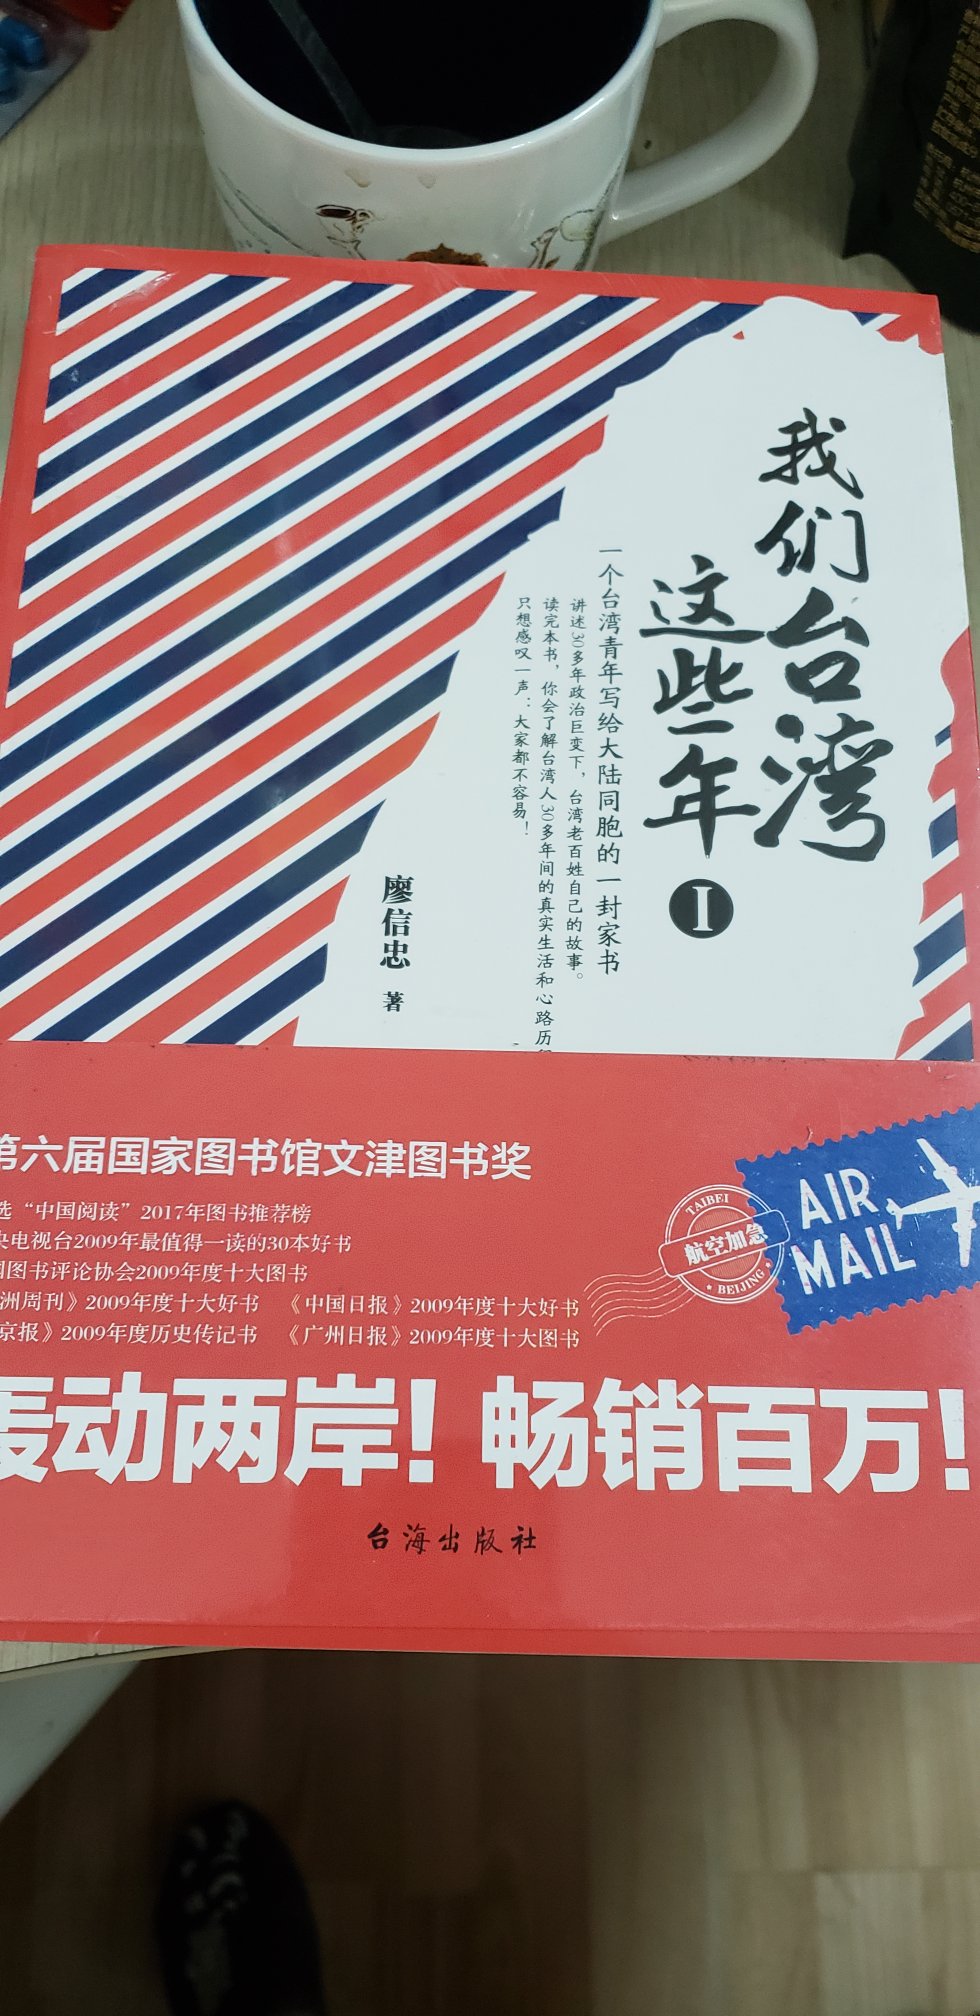 一直很想拜读这部著作，印刷质量不错，不知道提前阅读会不会对游台湾有帮助？